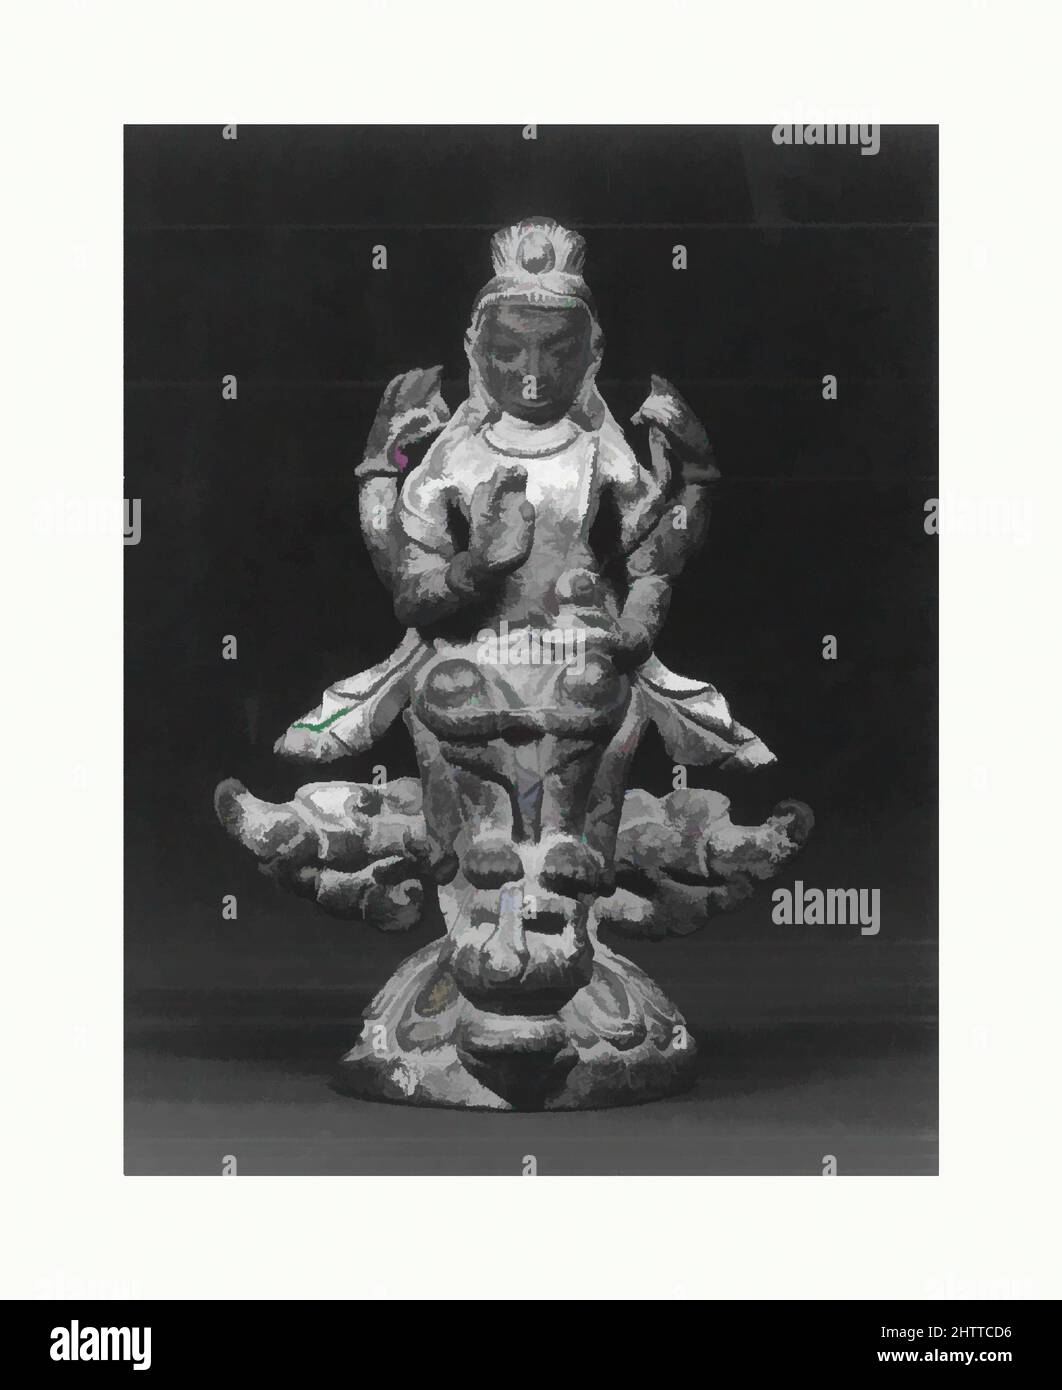 Art inspiré par assis quatre-armés Shiva, période Malla, 12th siècle, Népal (vallée de Katmandou), cuivre, H. 3 1/4 po (8,3 cm), Sculpture, oeuvres classiques modernisées par Artotop avec une touche de modernité. Formes, couleur et valeur, impact visuel accrocheur sur l'art émotions par la liberté d'œuvres d'art d'une manière contemporaine. Un message intemporel qui cherche une nouvelle direction créative. Artistes qui se tournent vers le support numérique et créent le NFT Artotop Banque D'Images